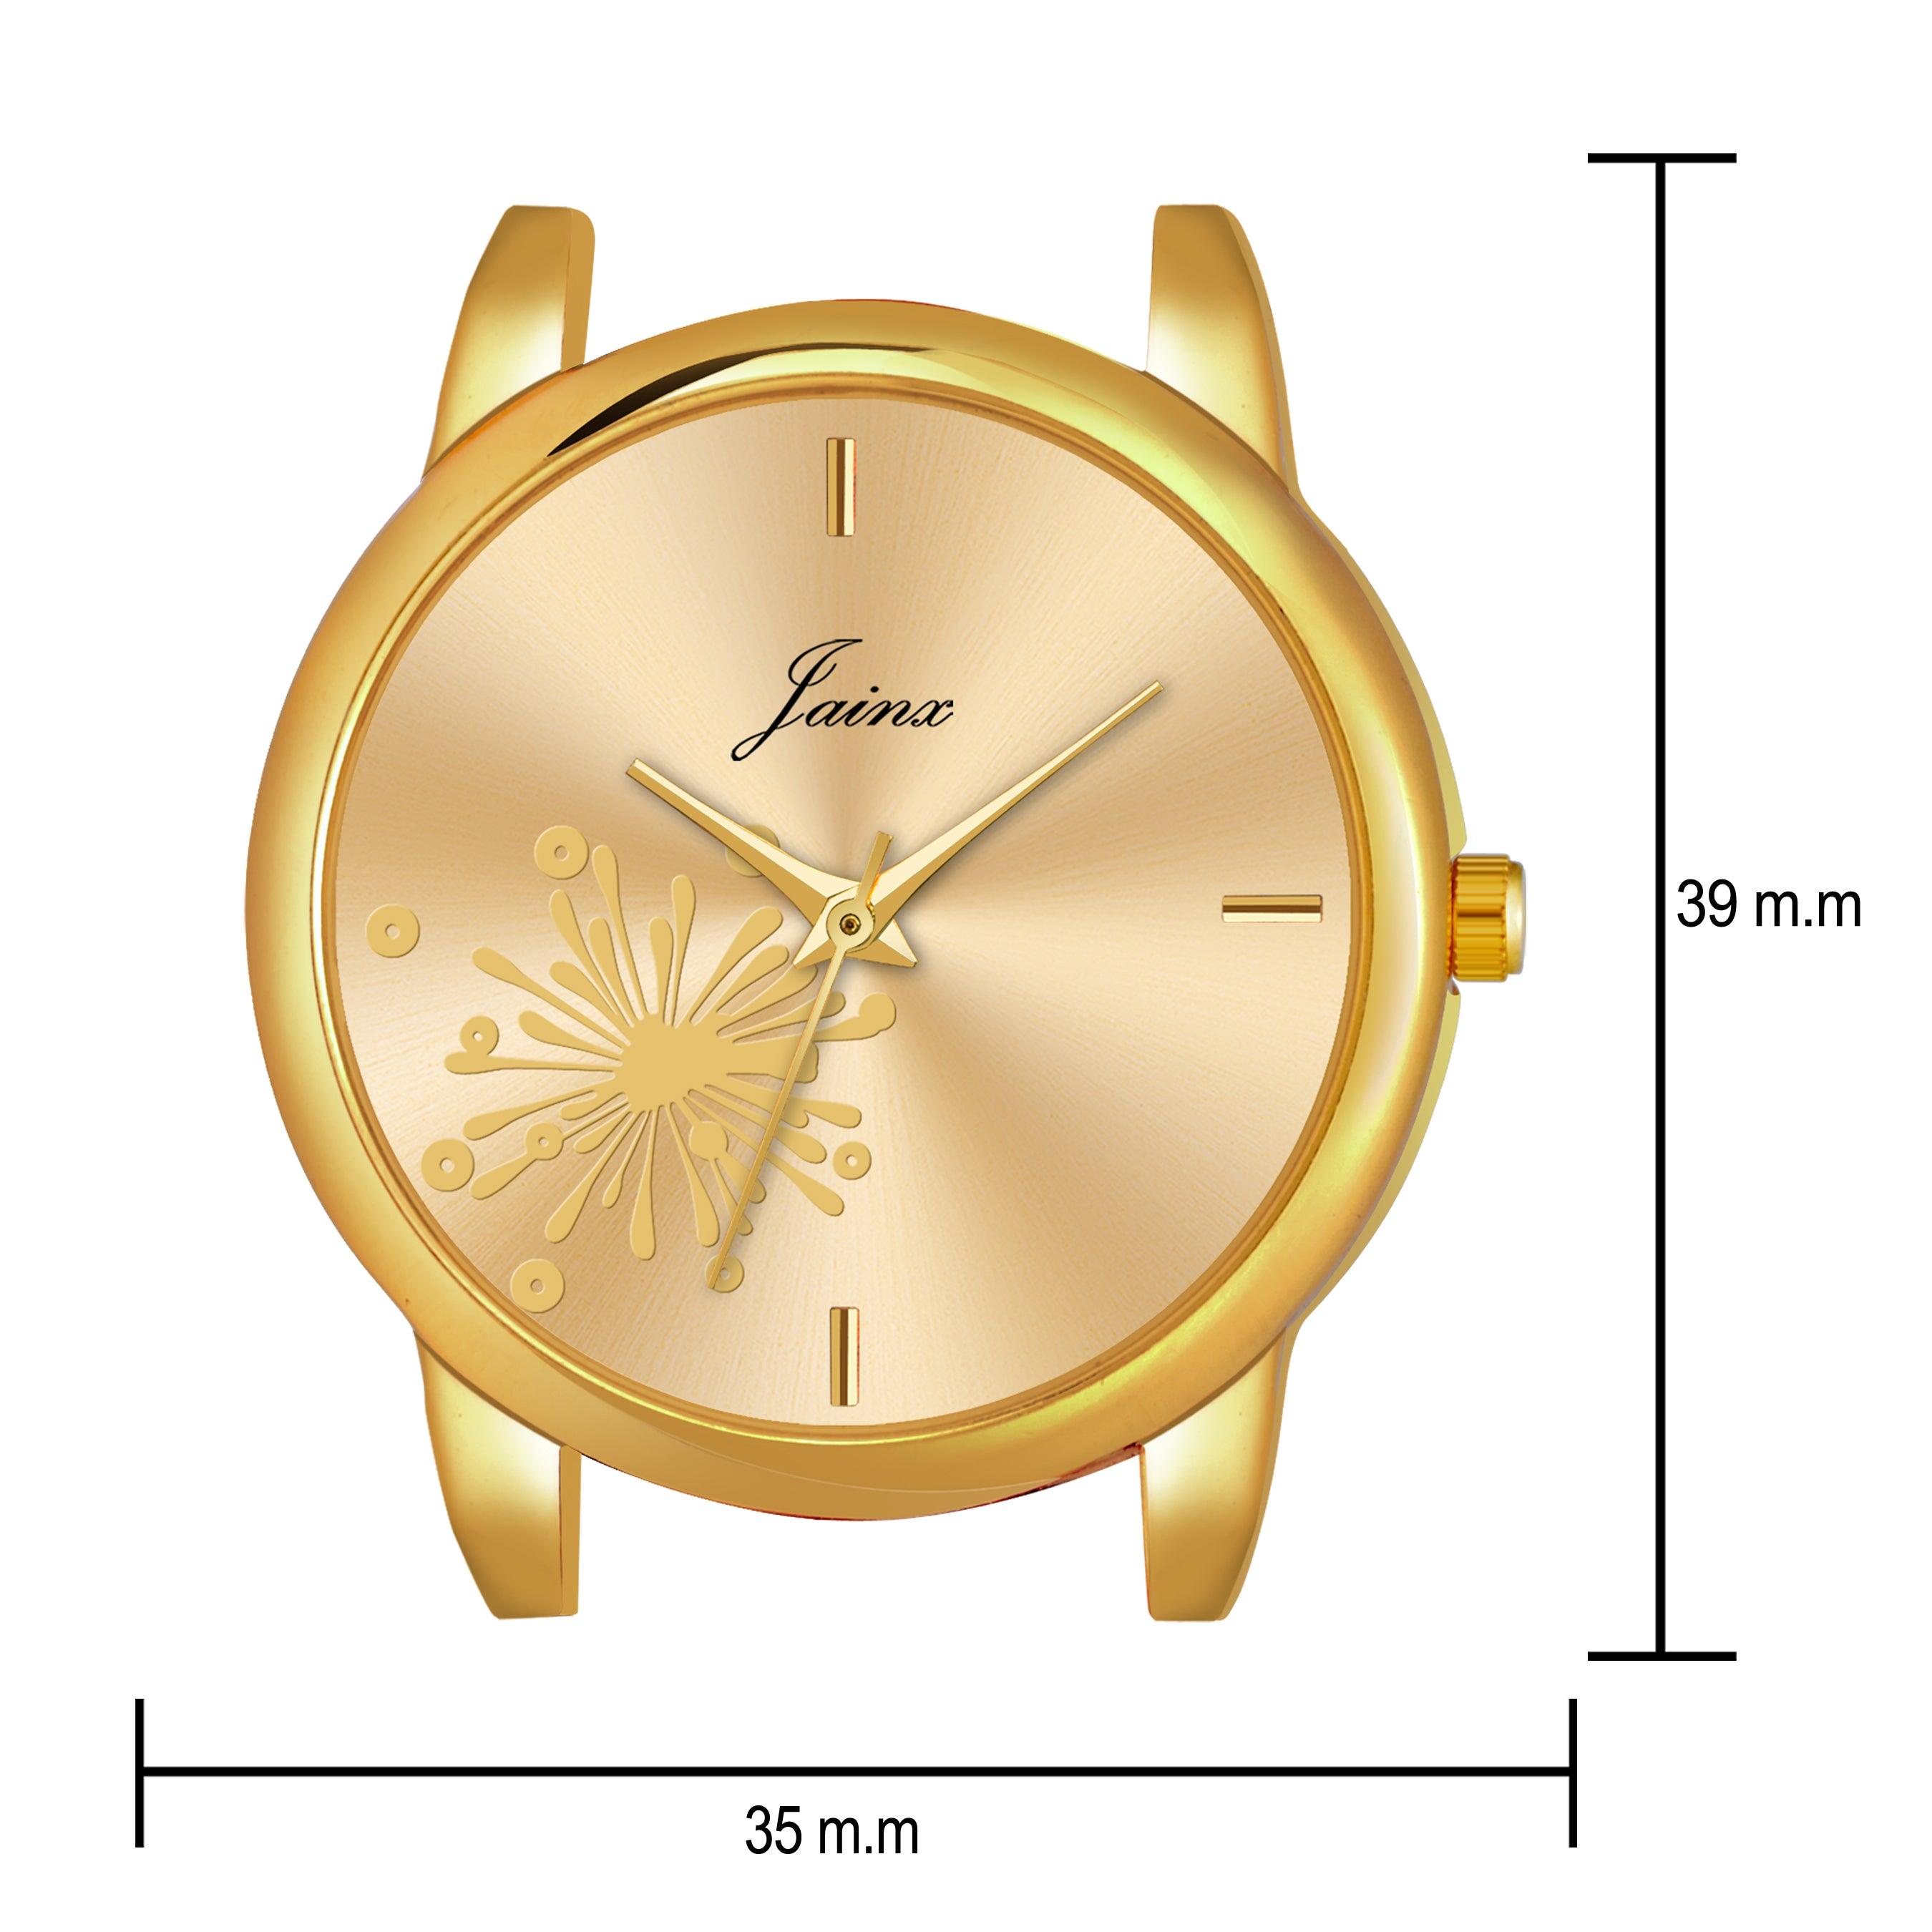 Jainx Golden Dial Silicone Band Analog Wrist Watch for Women - JW8561 - Jainx Store